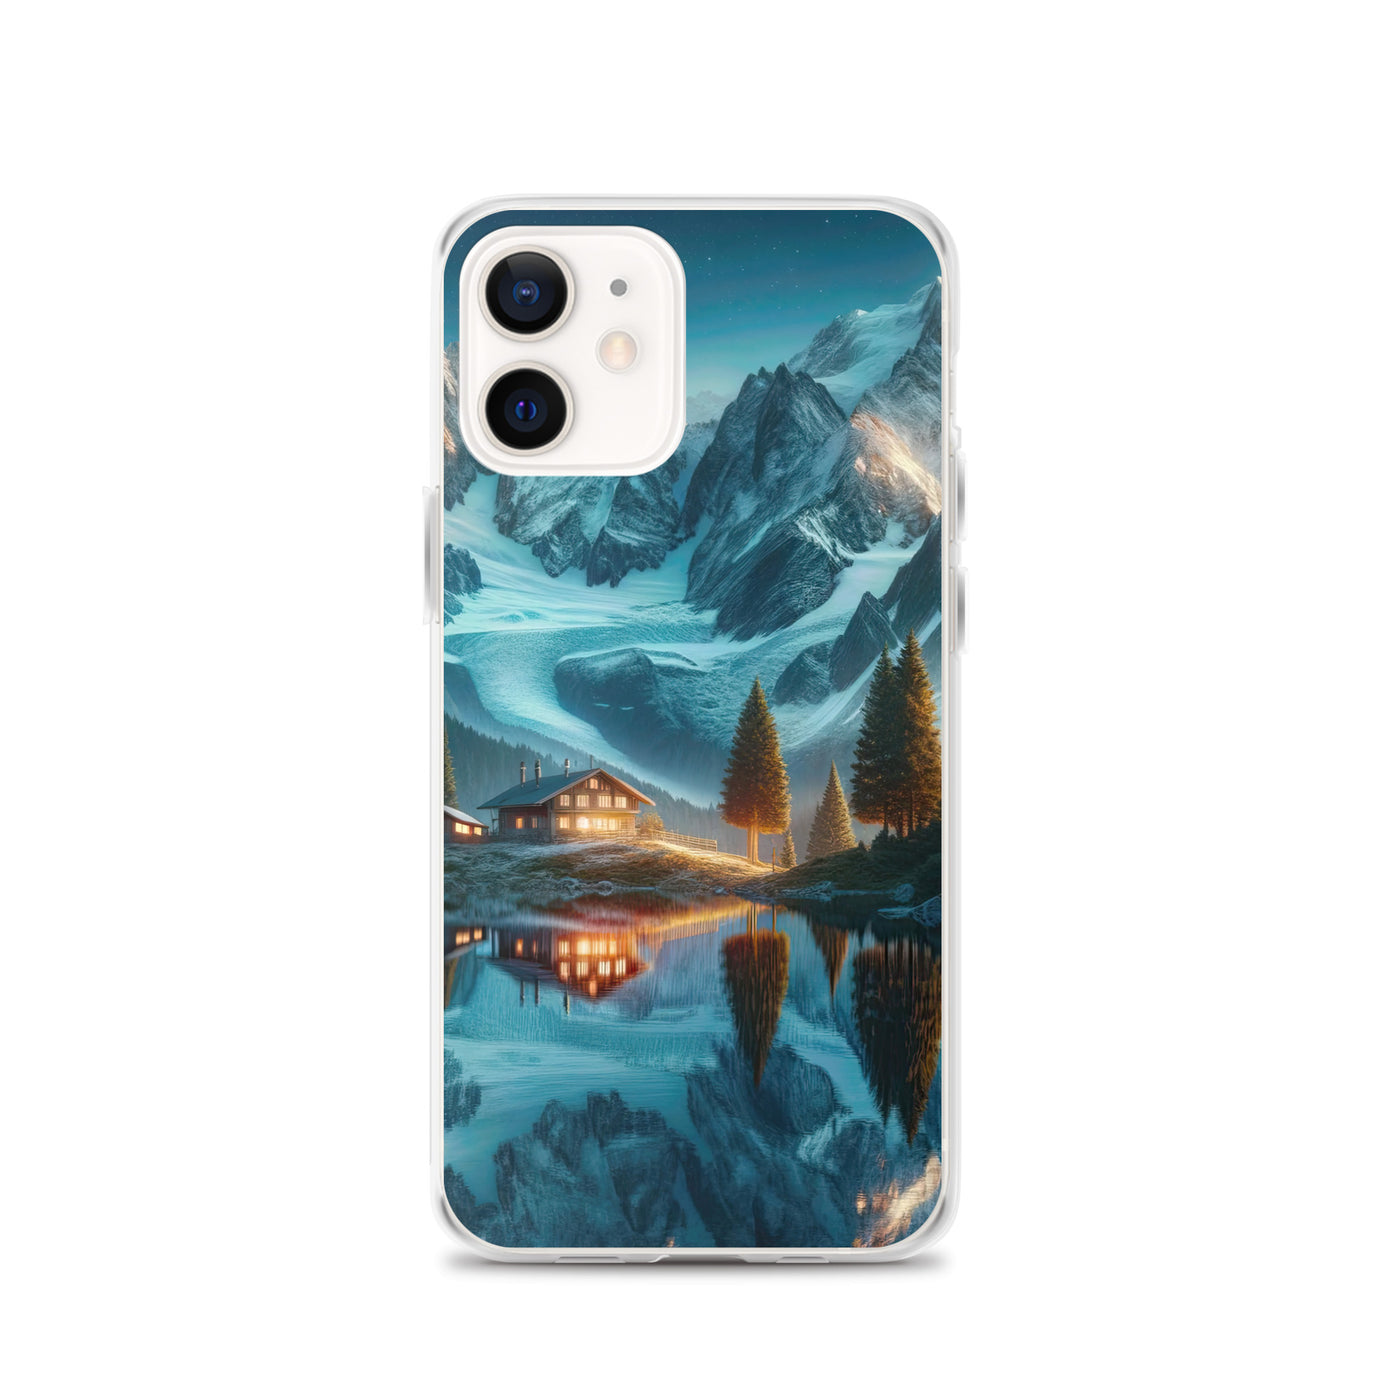 Stille Alpenmajestätik: Digitale Kunst mit Schnee und Bergsee-Spiegelung - iPhone Schutzhülle (durchsichtig) berge xxx yyy zzz iPhone 12